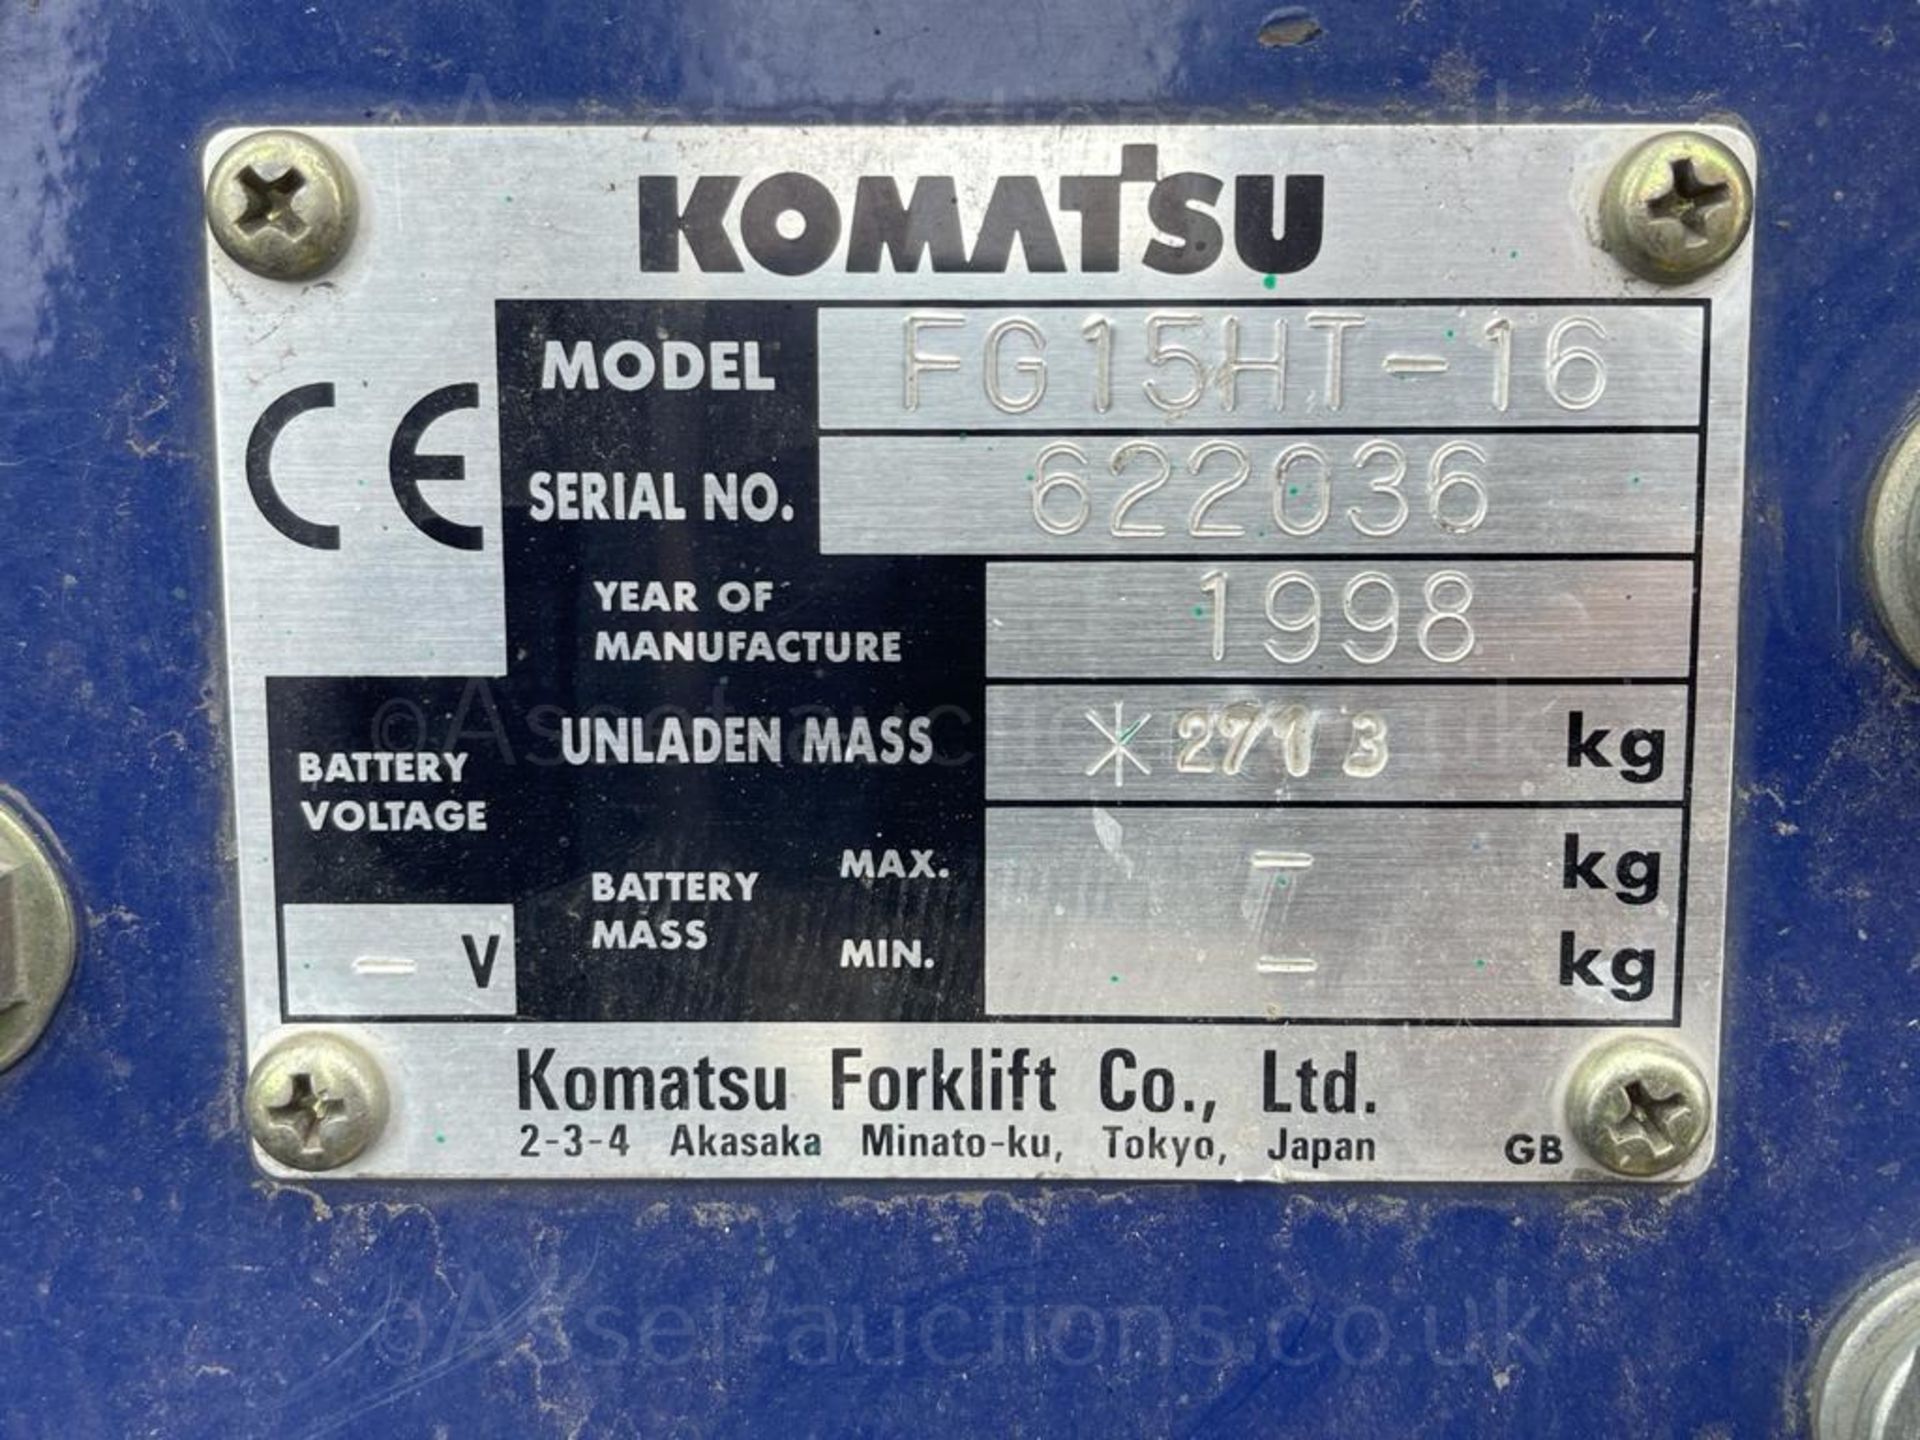 1998 KOMATSU FG15HT-16 1.5TON LPG FORKLIFT, 8167 HOURS, GAS BOTTLE NOT INCLUDED *PLUS VAT* - Image 12 of 12